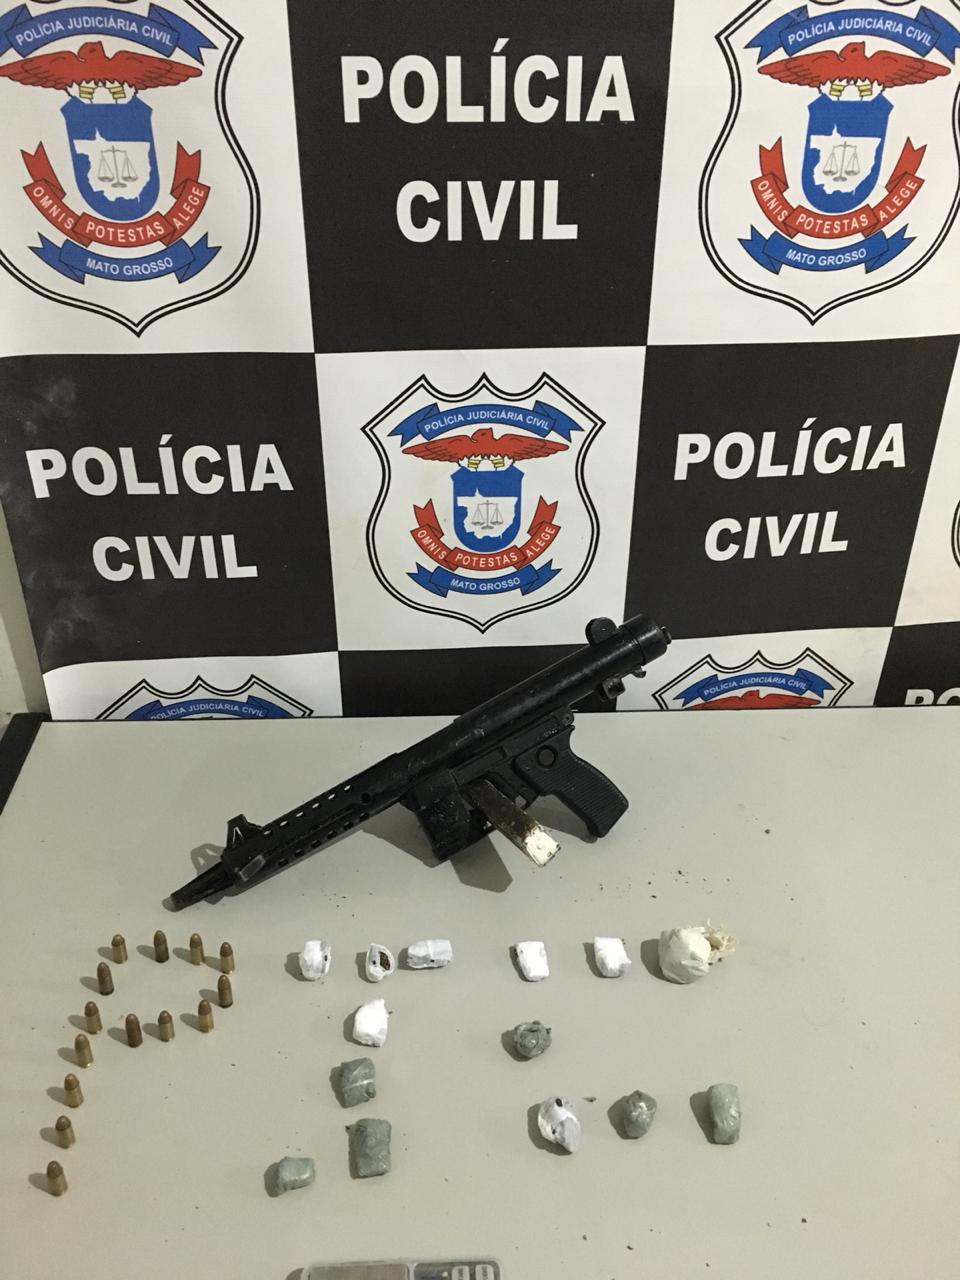 Submetralhadora, munições e drogas apreendidas com o menor. (Foto: divulgação PJC/MT)